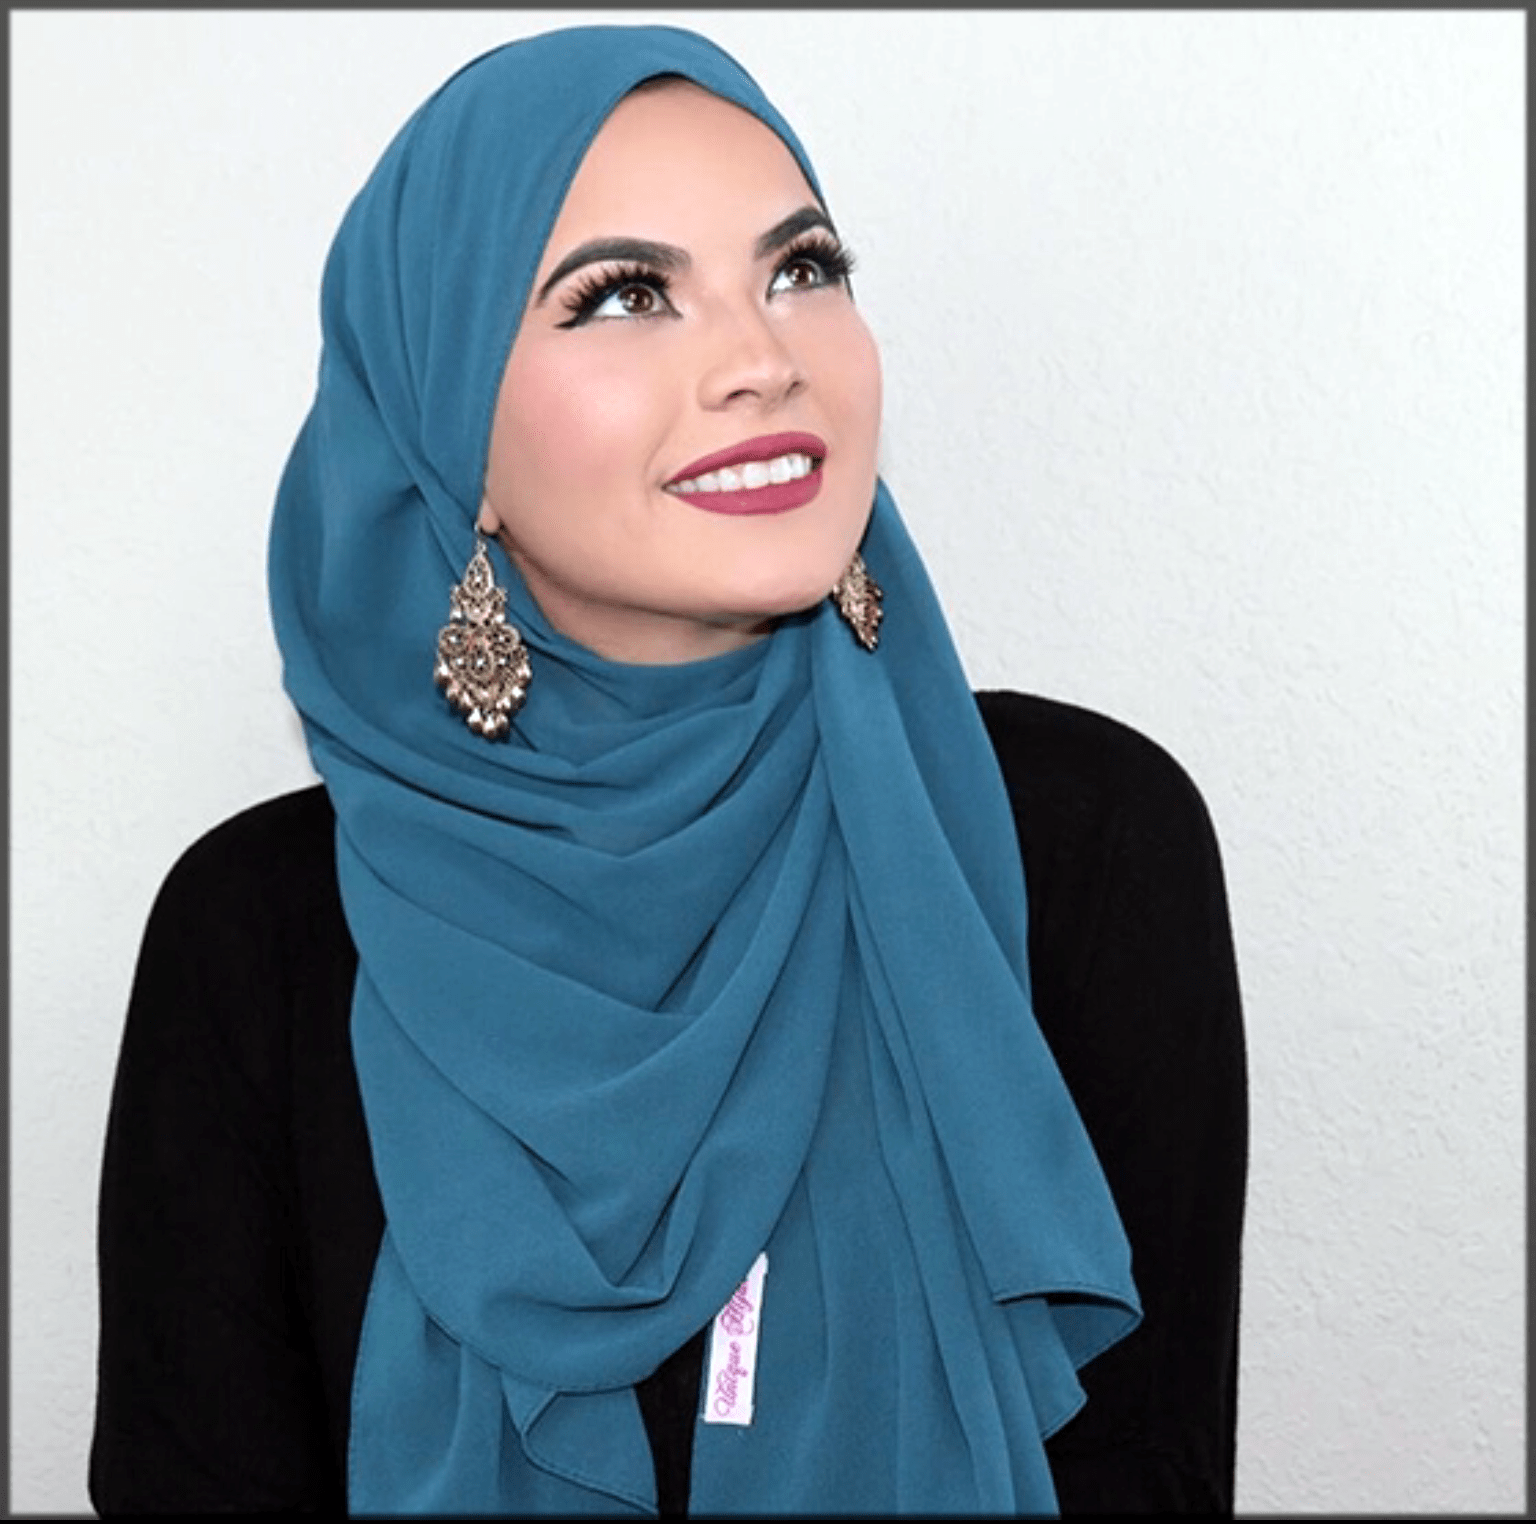 Как завязывать платок на хиджаб